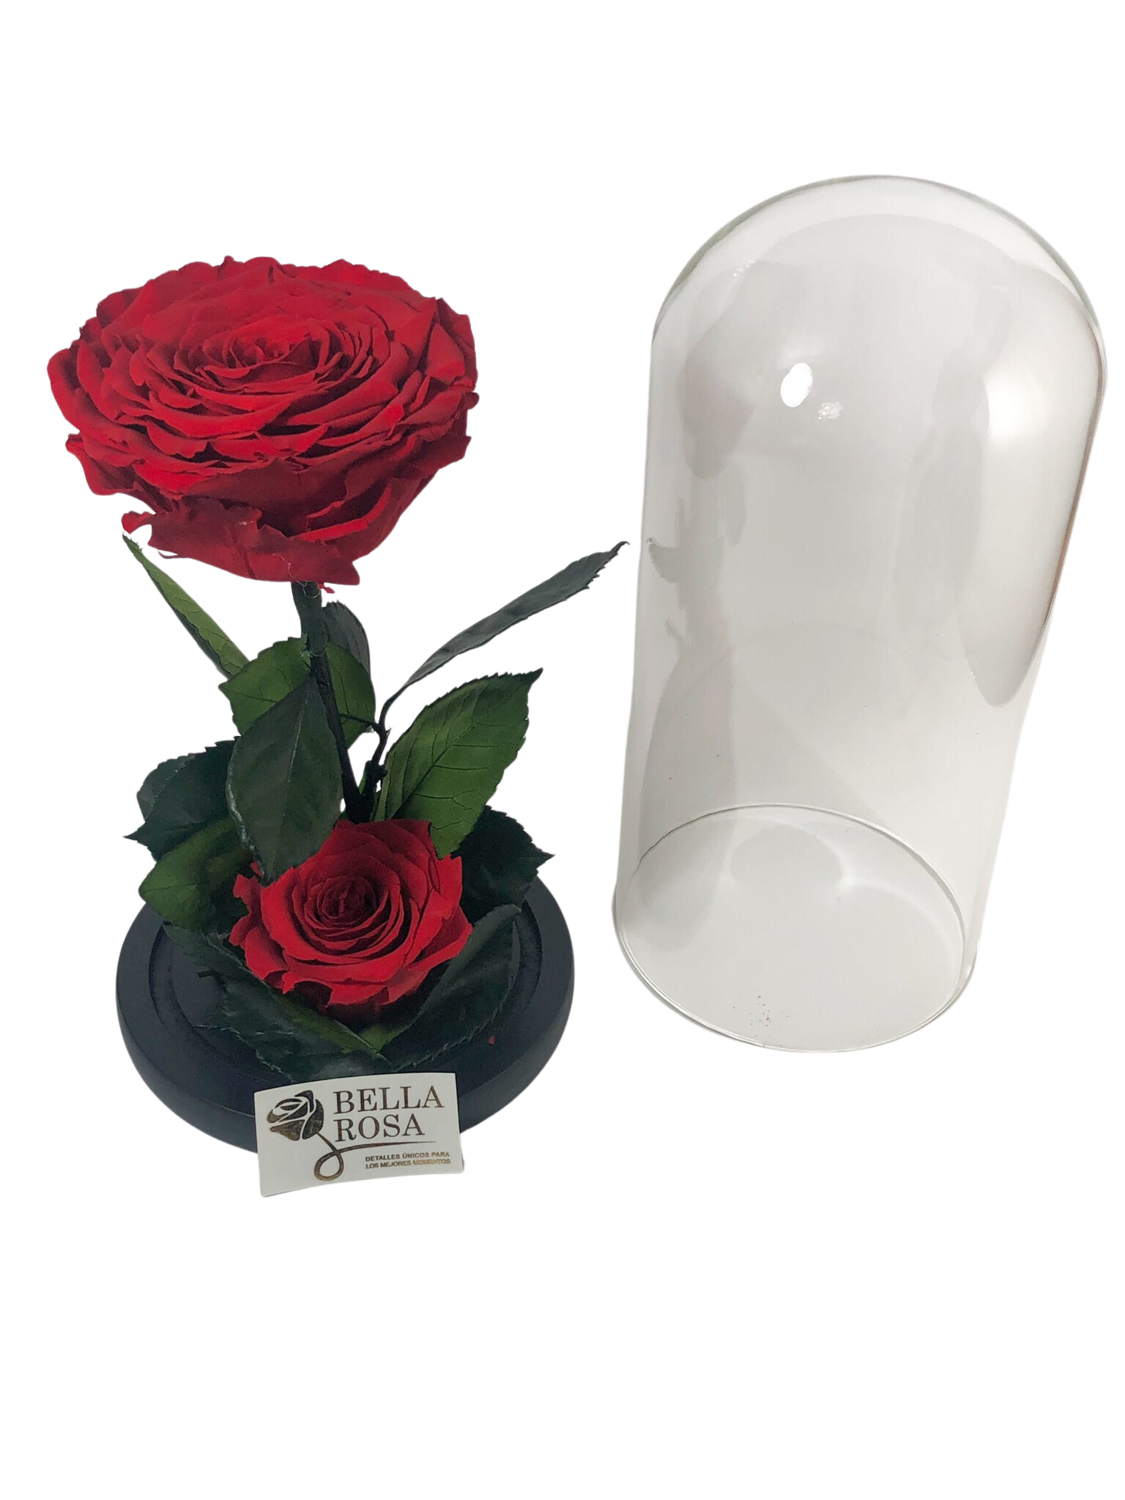 Cúpula de cristal con 2 rosas preservadas